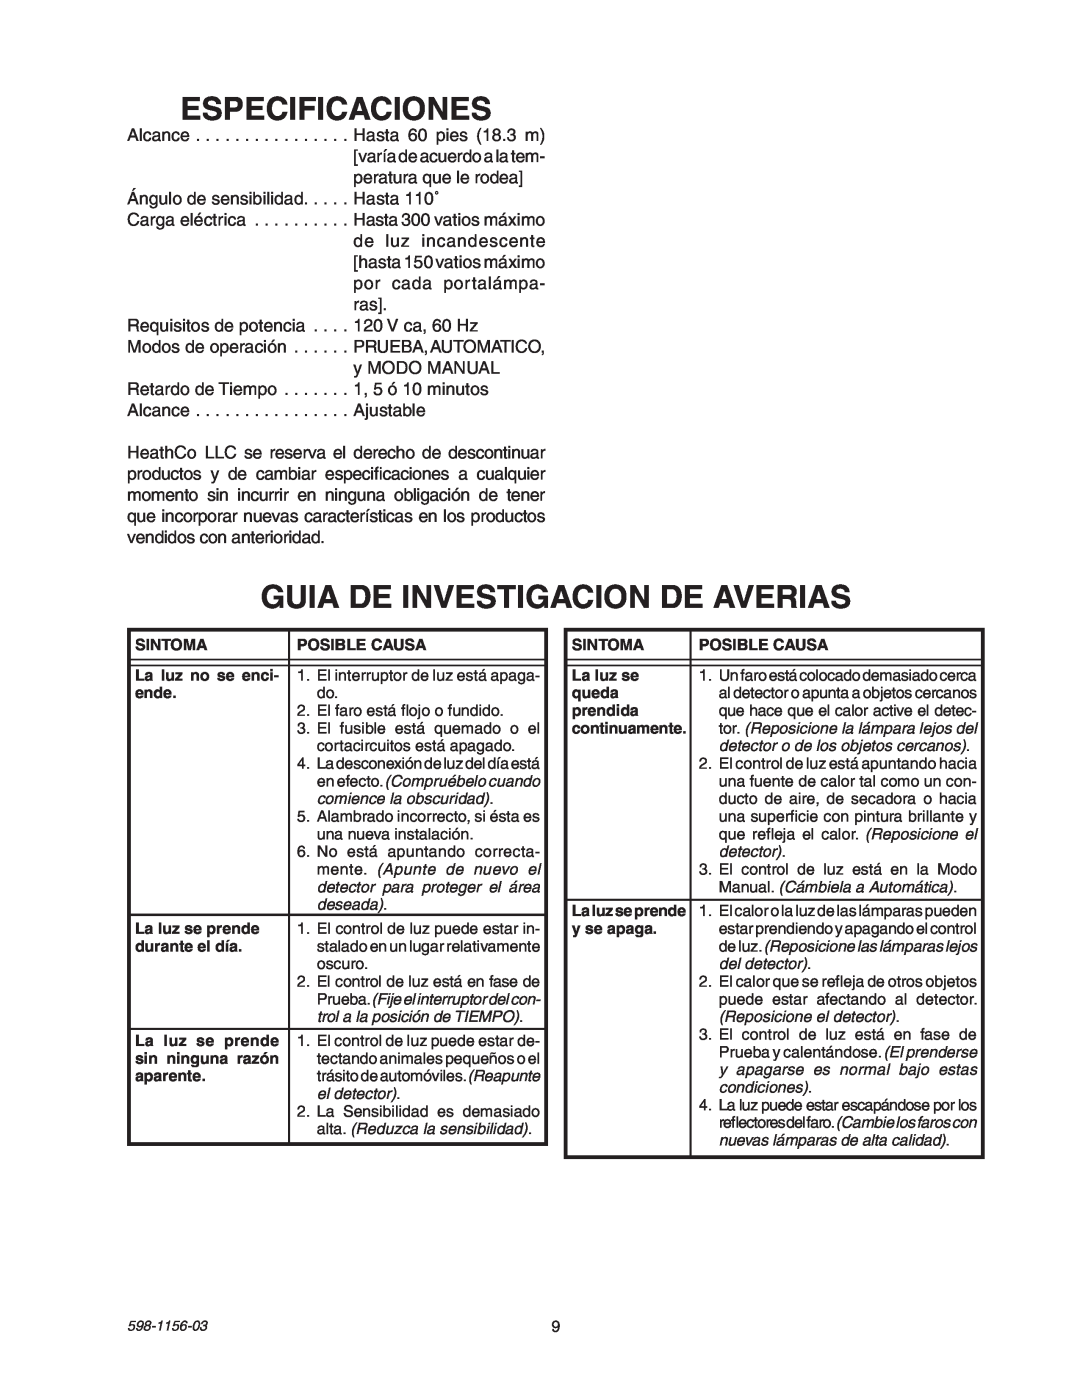 Heath Zenith SH-5408 manual Especificaciones, Guia De Investigacion De Averias 